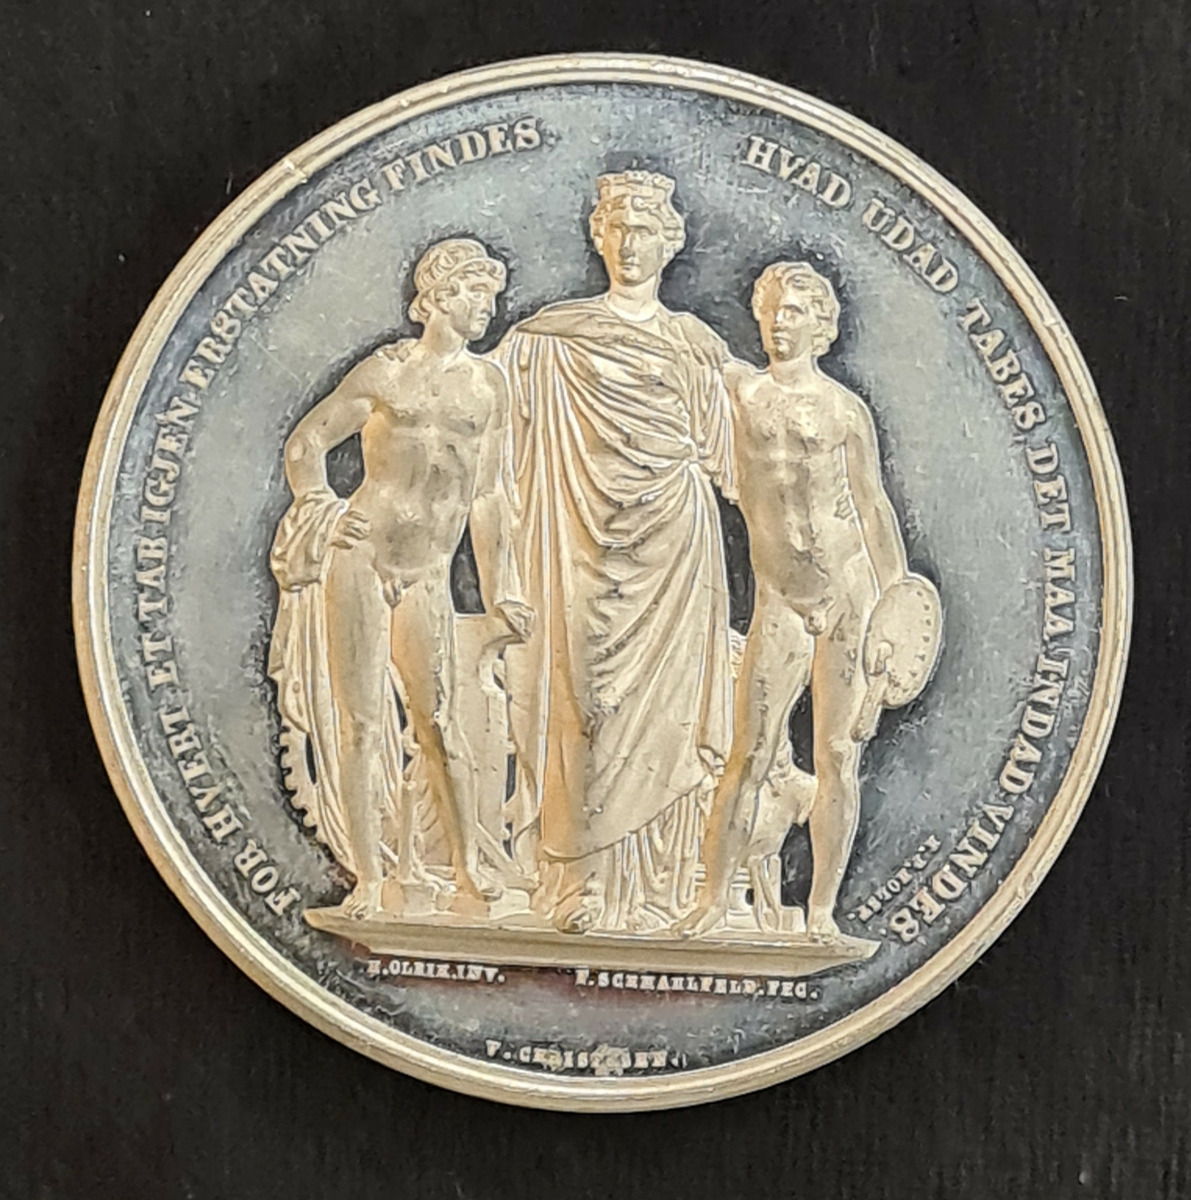 Medalj från Industri- och Konstutställningen i Köpenhamn år 1872.
Utställningen kallades även den Skandinaviska eller Nordiska utställningen.